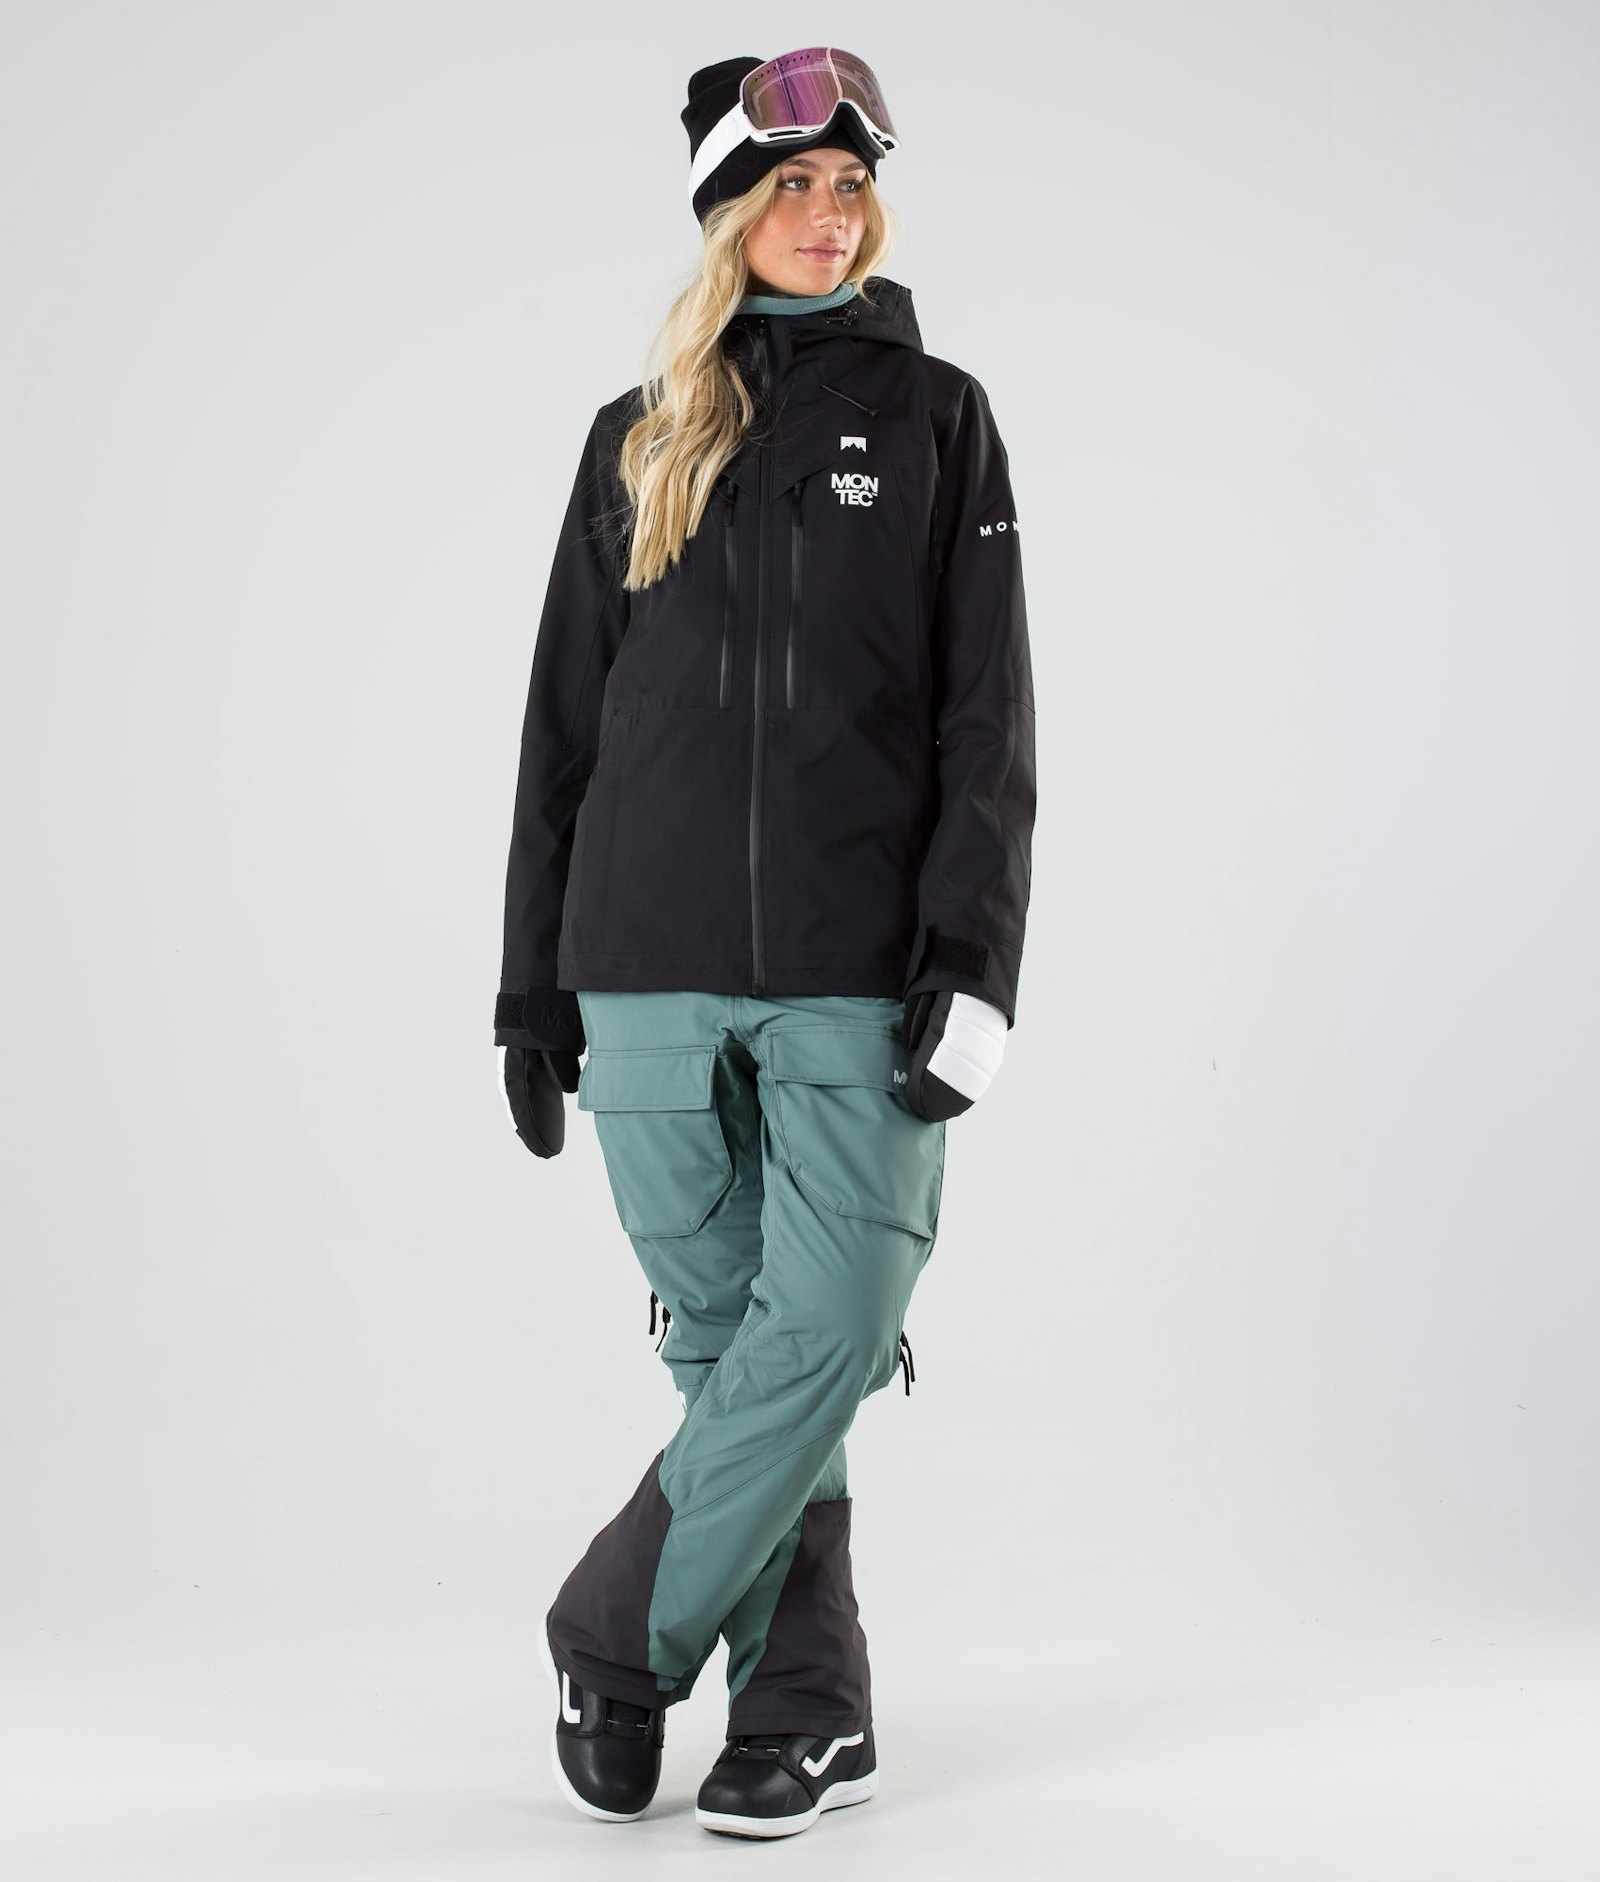 Montec Moss W 2019 Snowboardjacke Damen Black